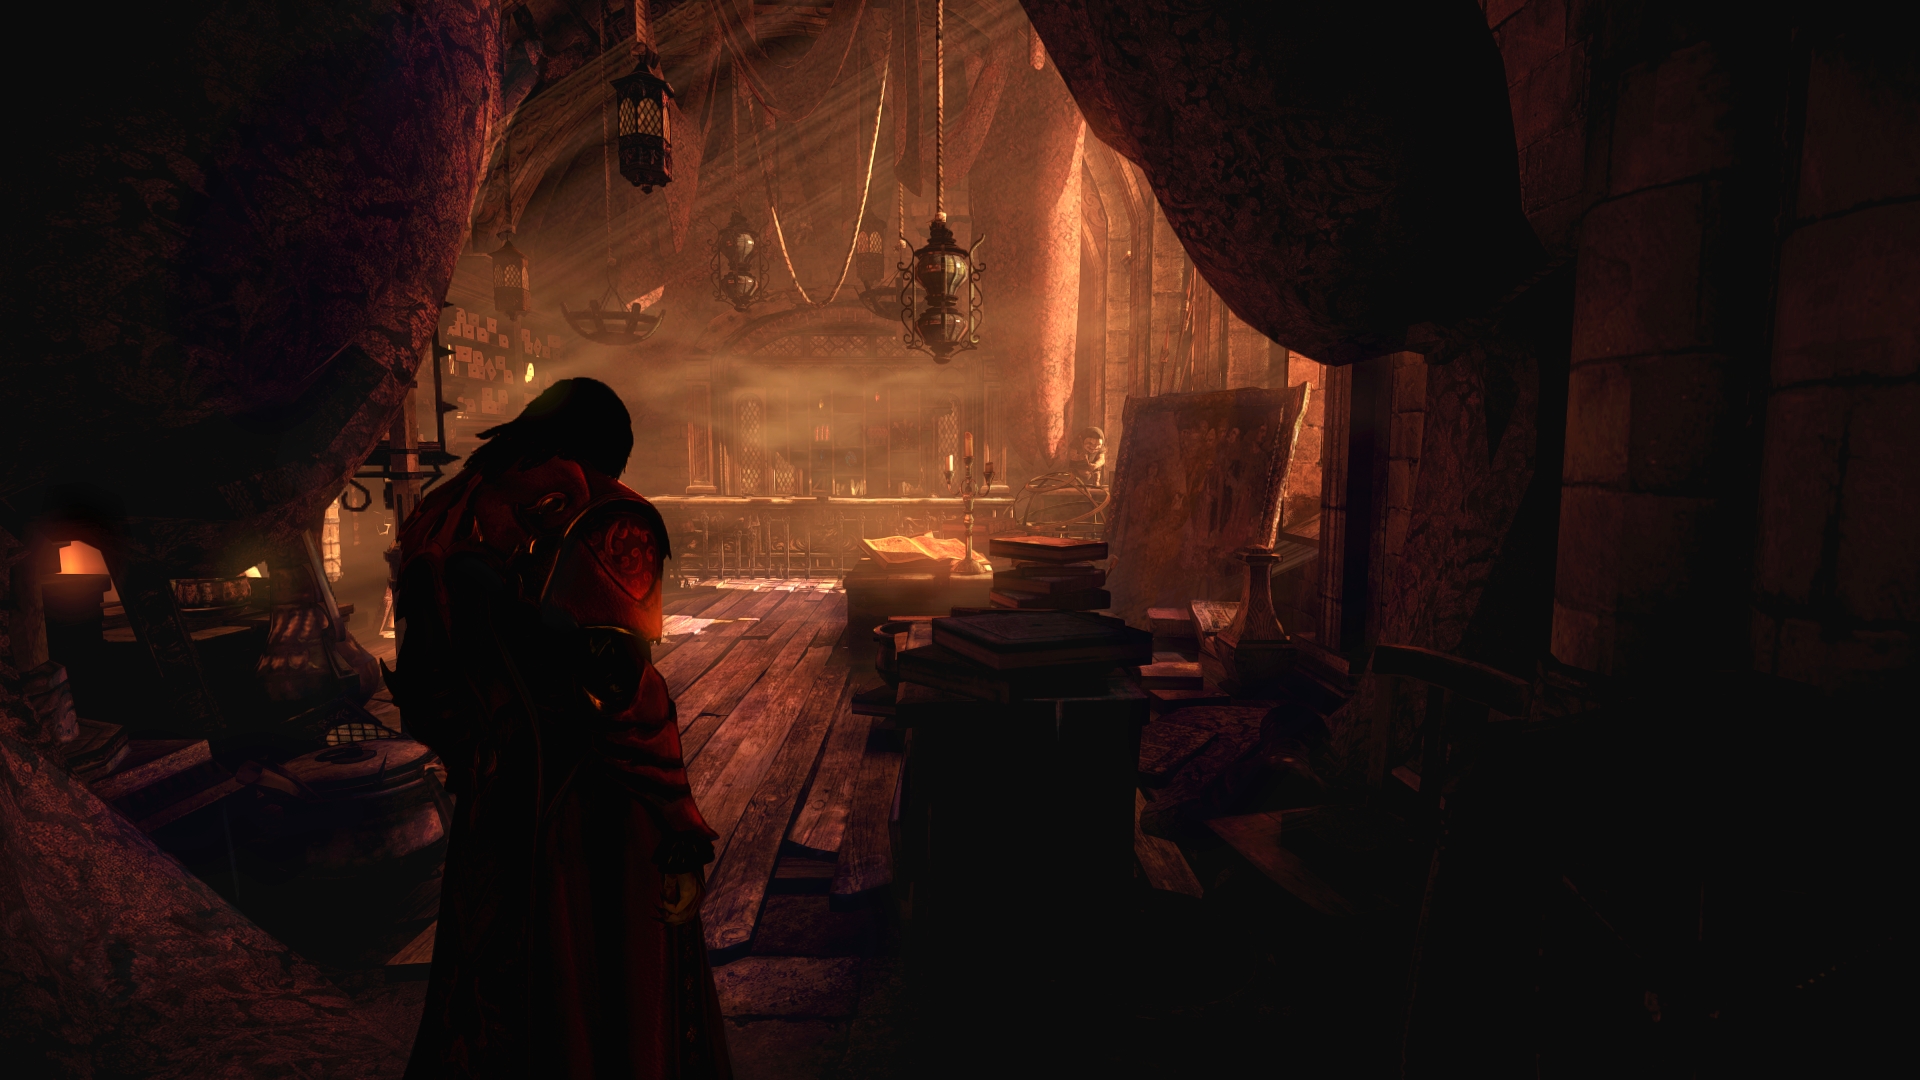 Data premiery Castlevania: Lords of Shadow 2 ujawniona. Nowe screeny, także z pierwszej części na PC